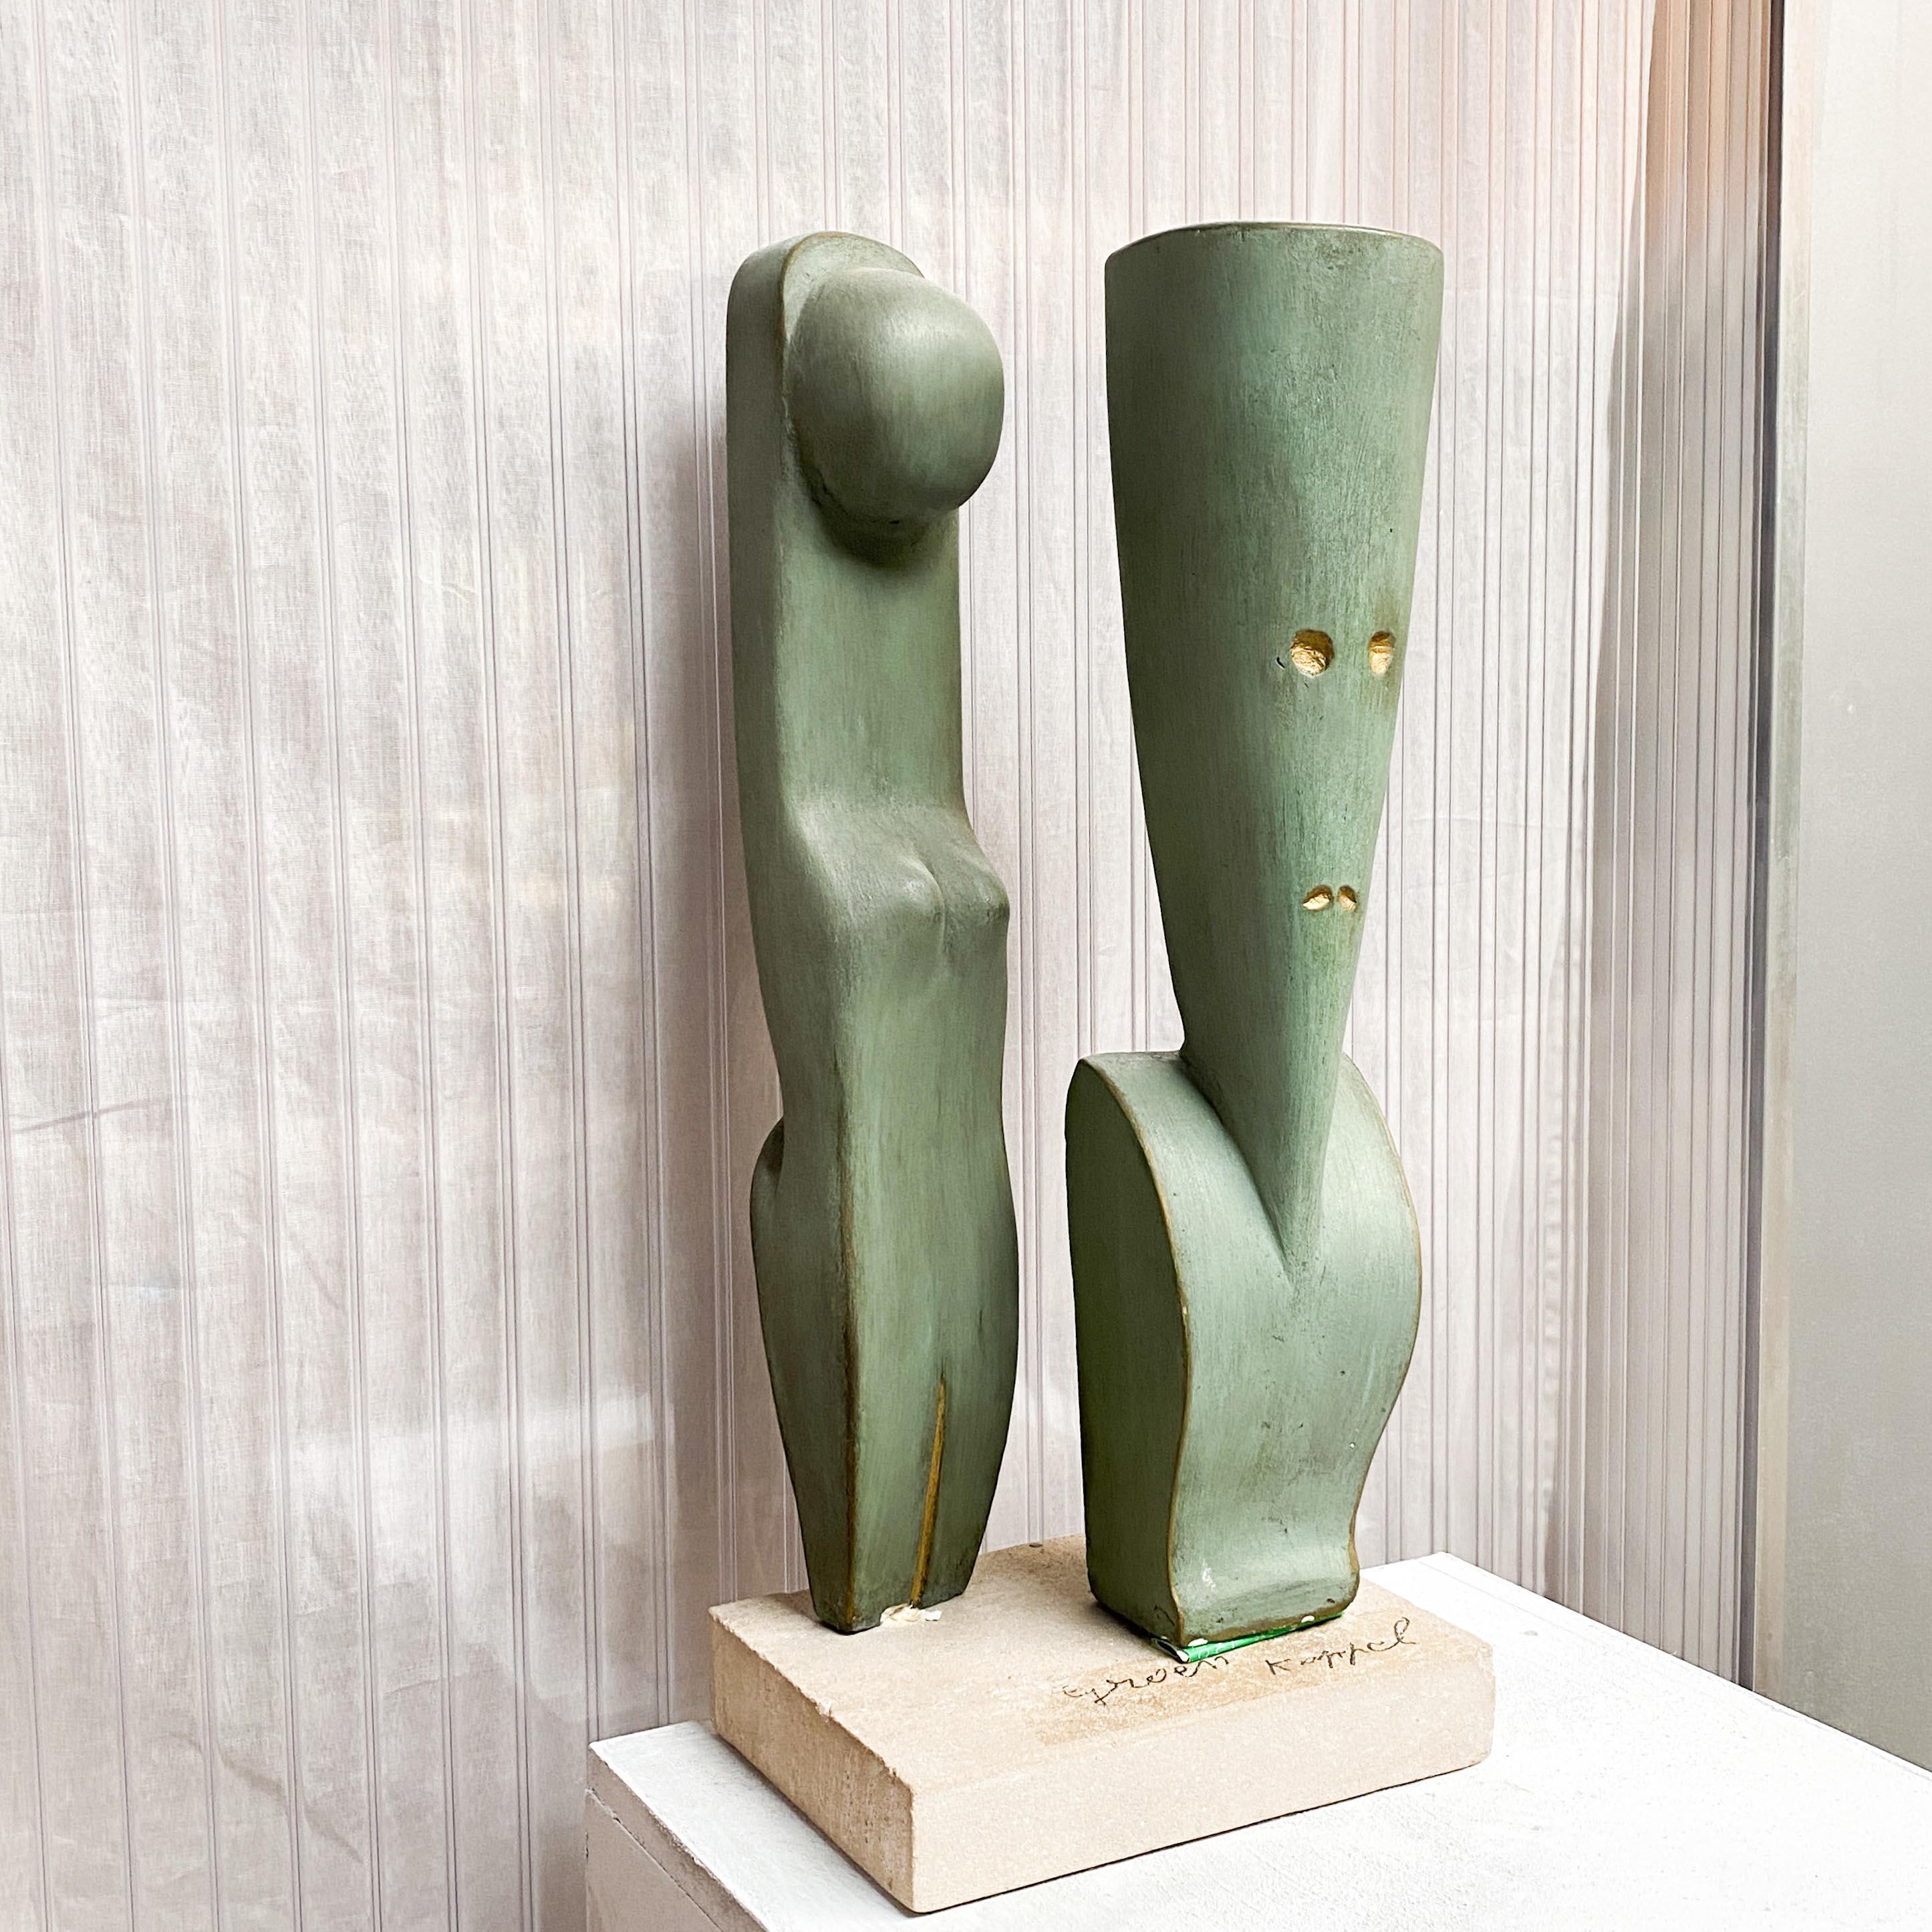 Interessante modernistische Gipsskulptur eines stilisierten Paares. Hergestellt von einem unbekannten belgischen Künstler.

Ein sich aufdrängendes Paar abstrakter Formen, von denen eine eine weibliche Form, die andere einen Mann darstellt.